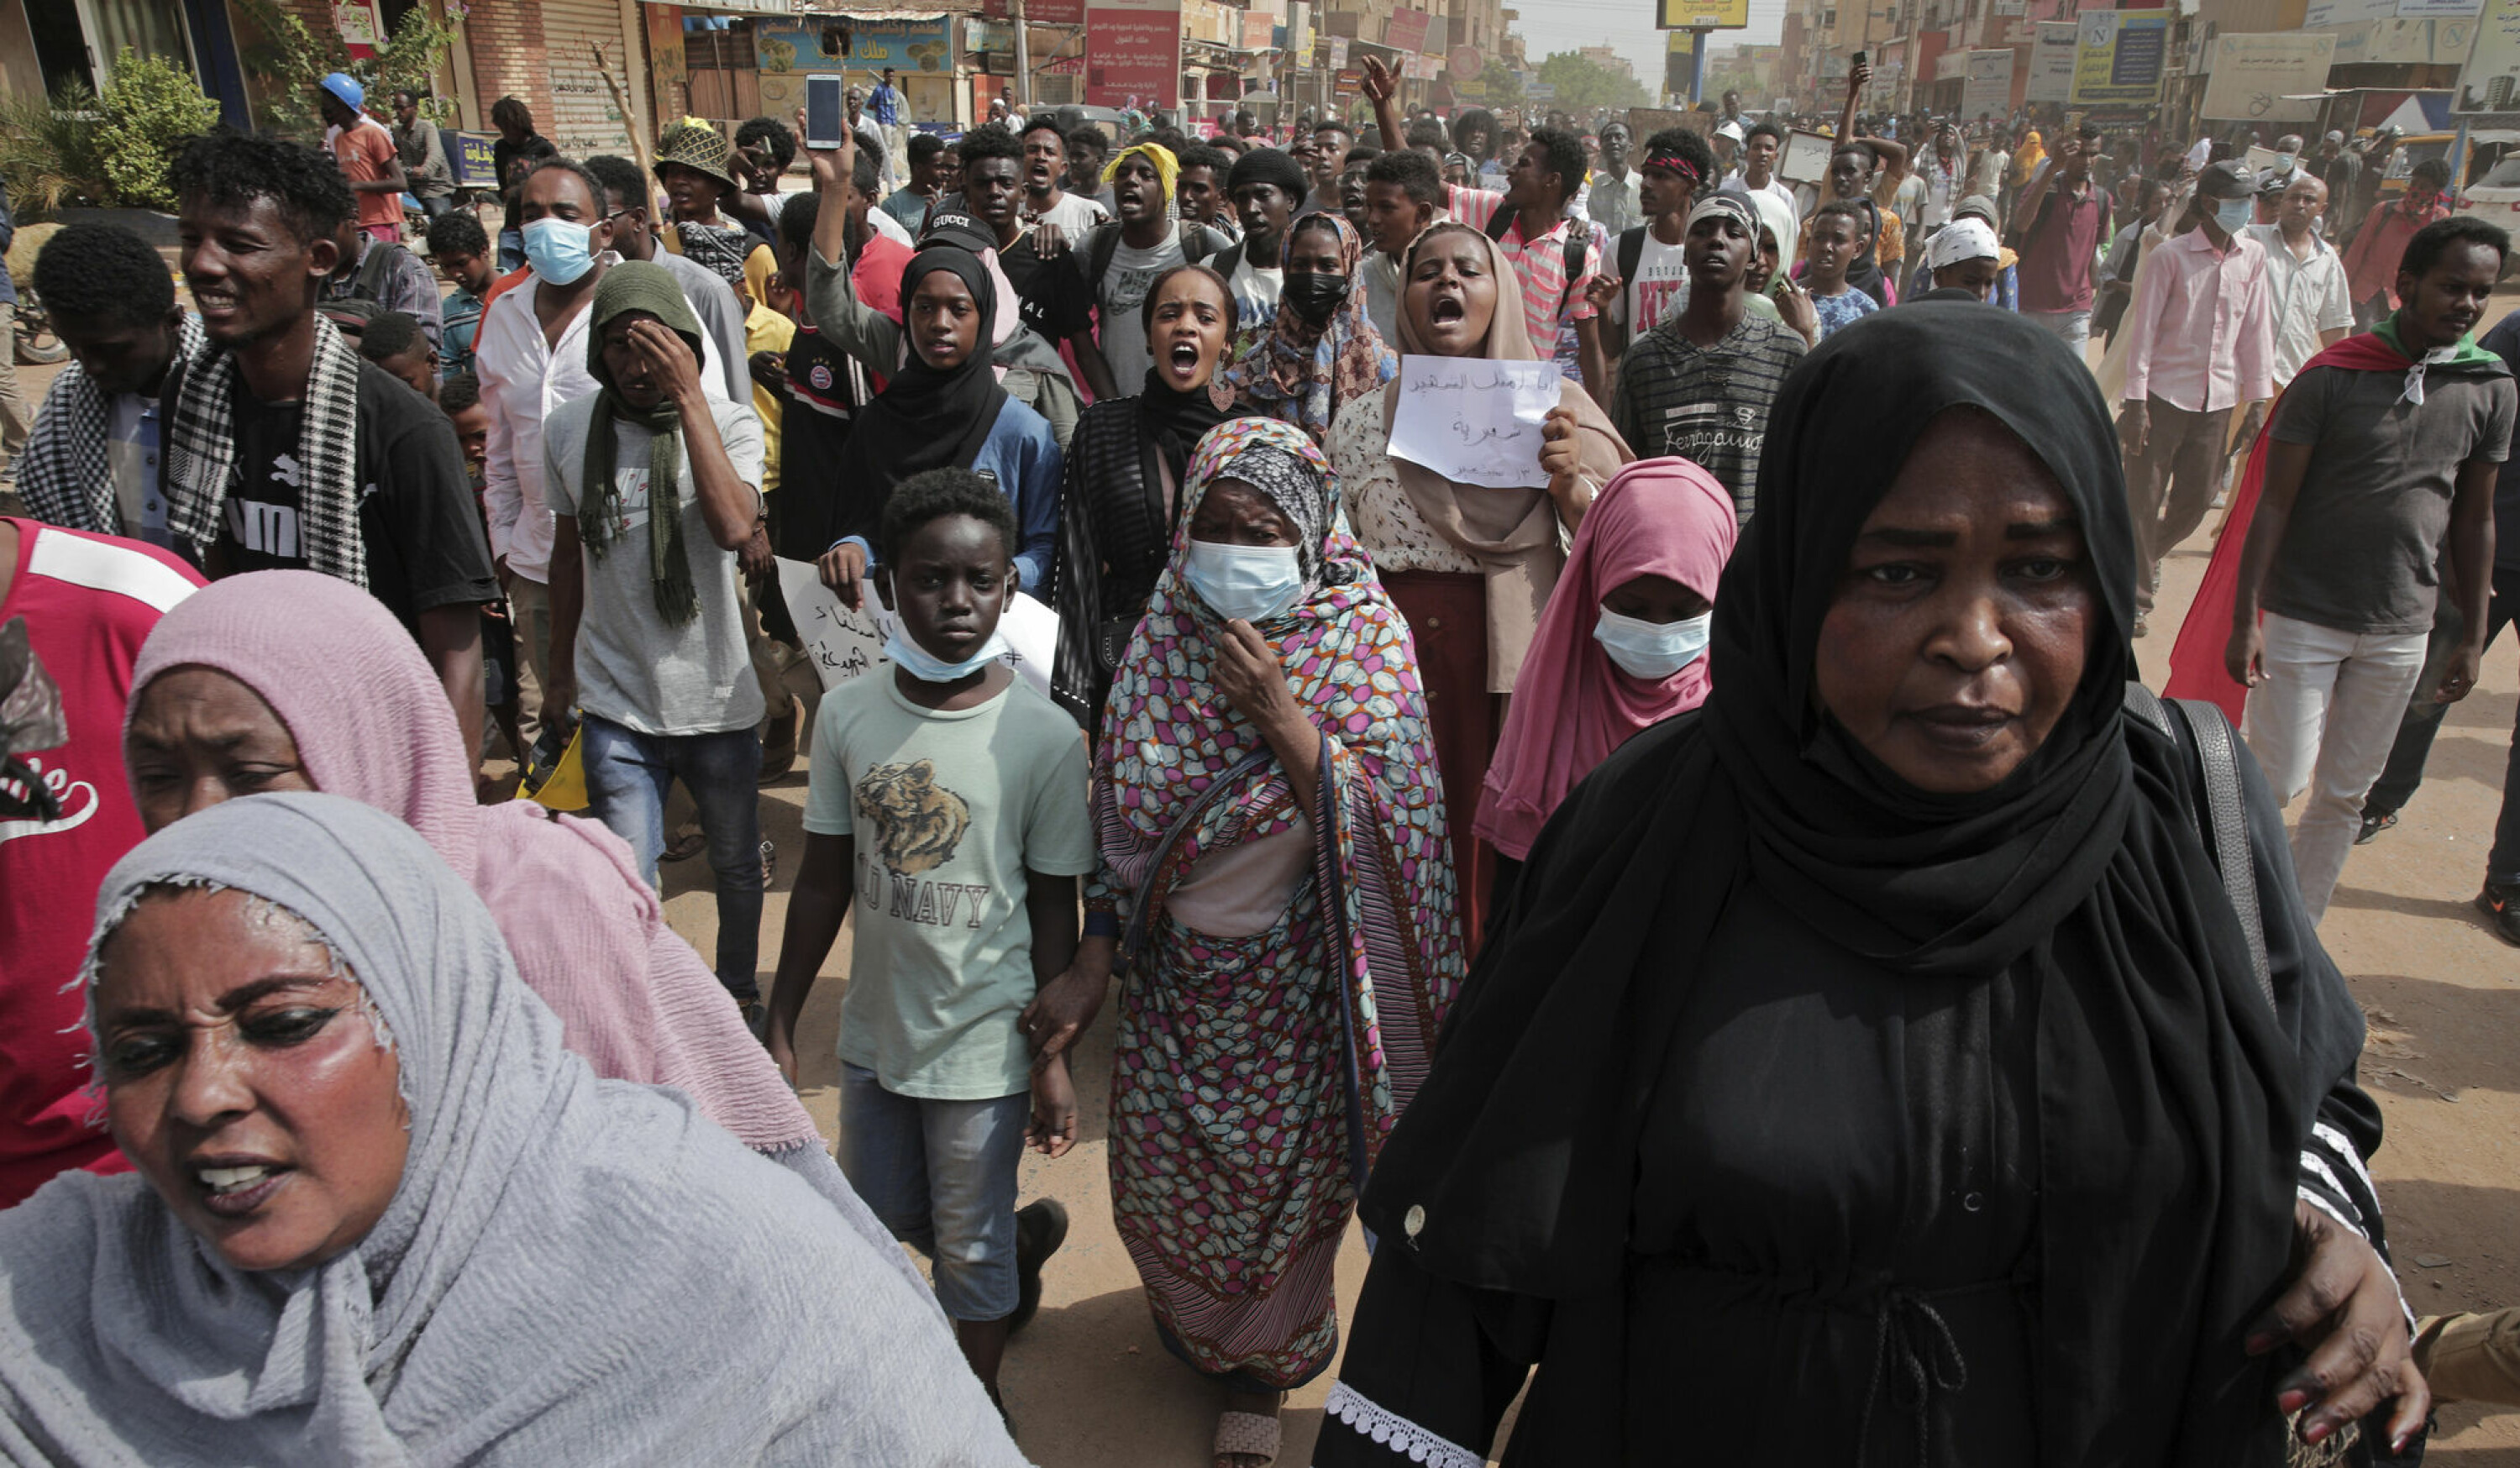 De militære kuppmakerne lovet å rydde opp i økonomisk og politisk kaos i Sudan. I stedet har de blitt møtt med måneder med store folkelige protester. Her er det folk i Khartoum som er ute i gatene 13. september i år – med krav om tilbakevending til sivilt styre.